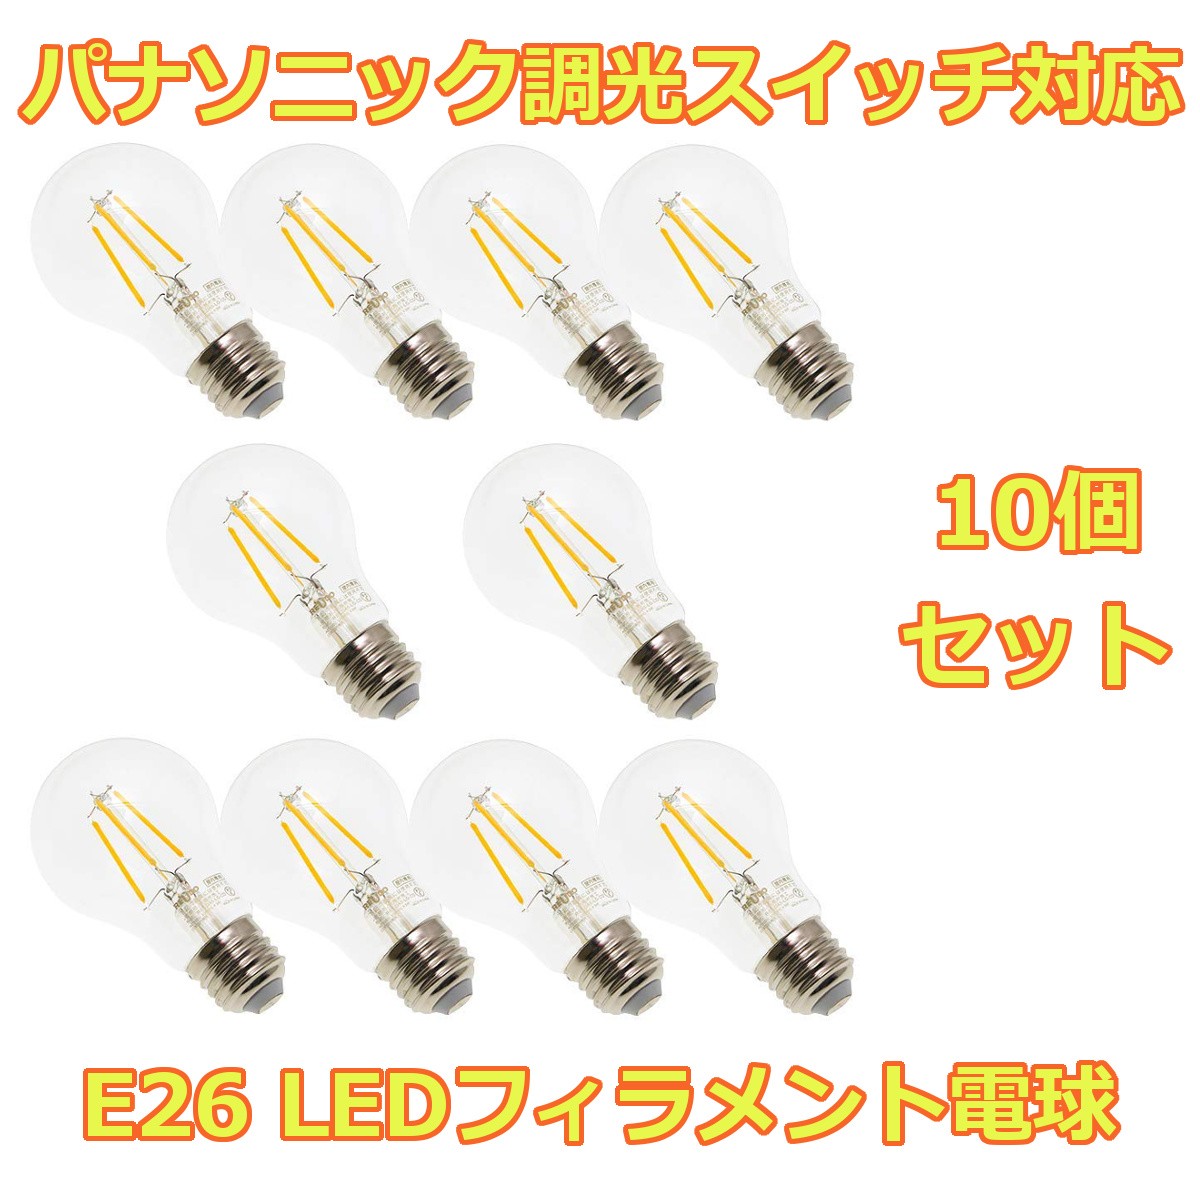 【10個パック】パナソニック調光スイッチ対応 全光束500lm 消費電力4.5W